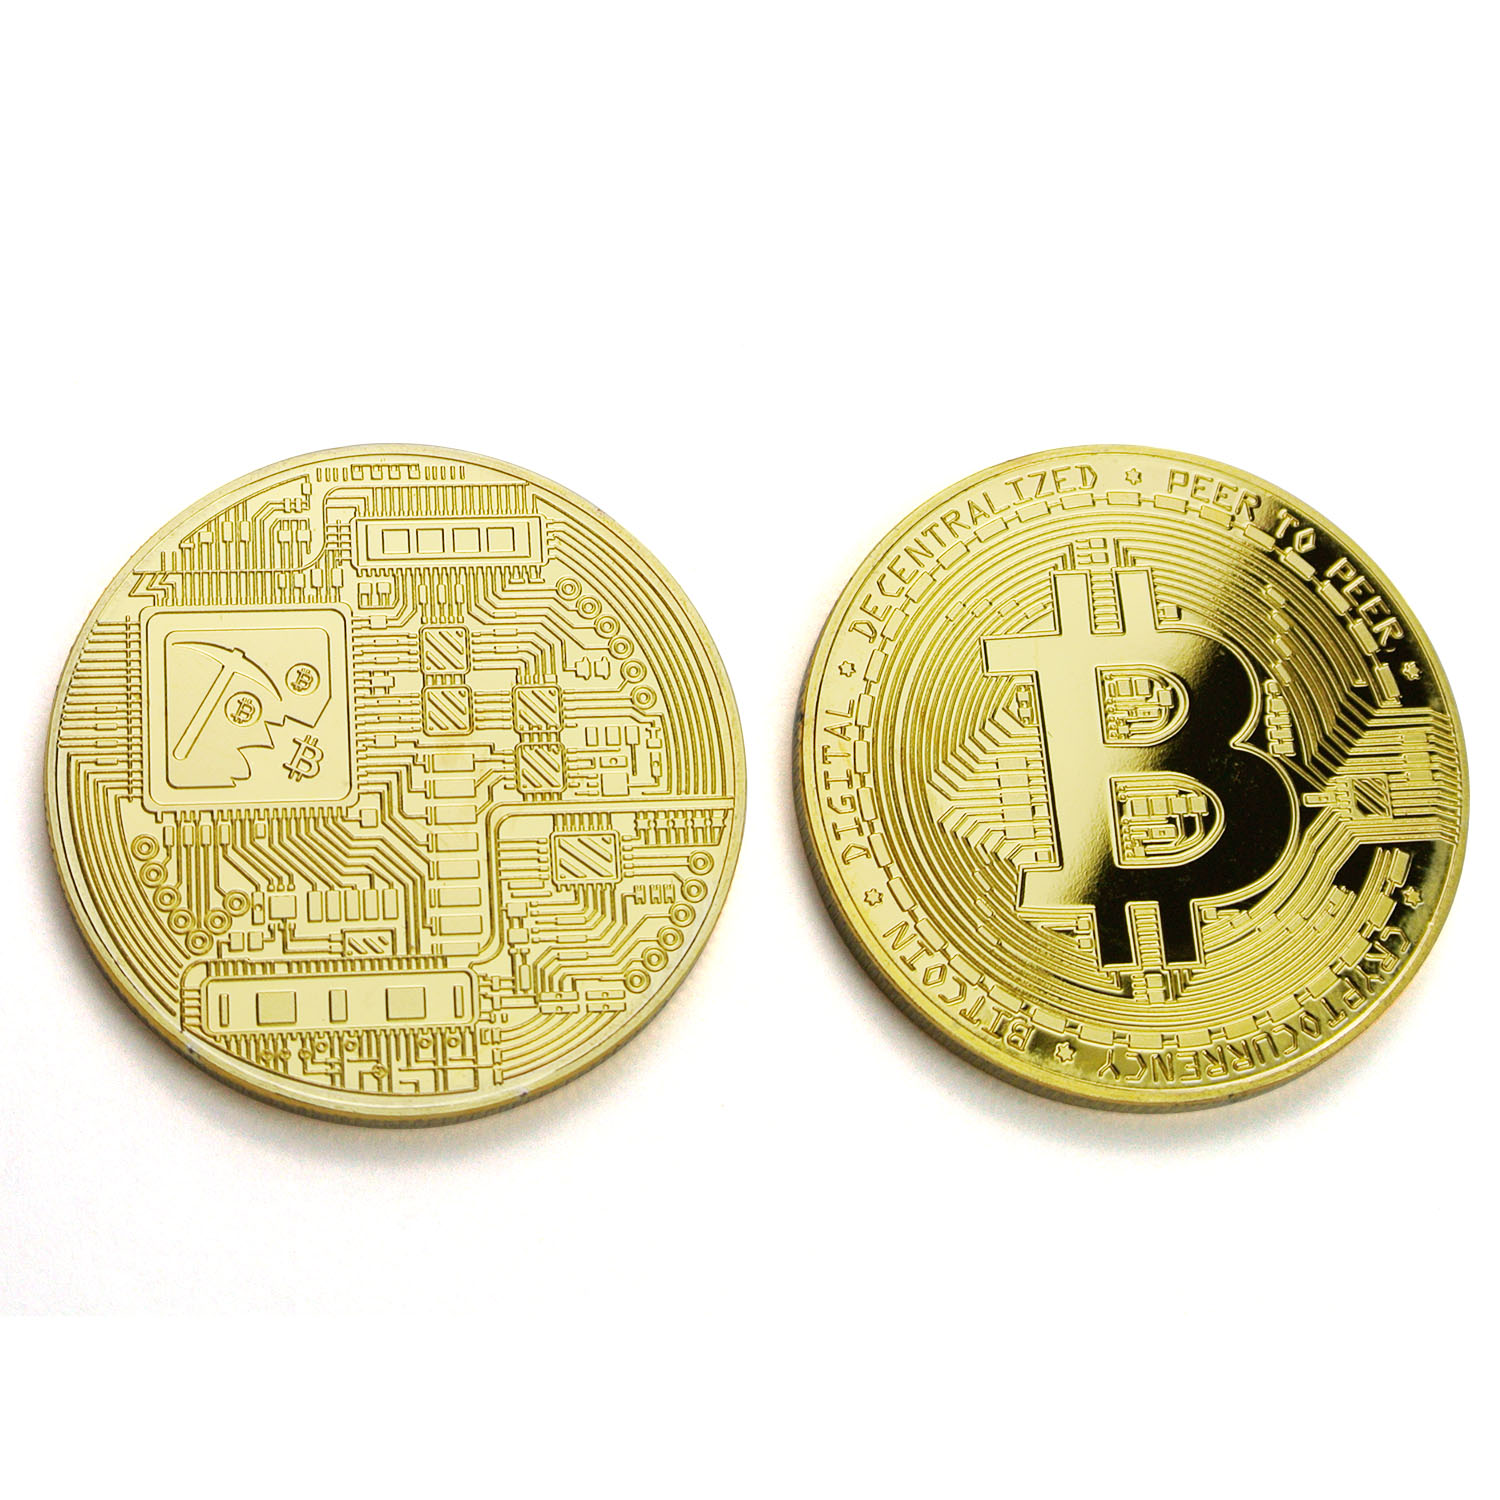 Heißer verkauf metall gold versilbert bit münze kunstsammlung geschenk kupfer 3d litecoin bitcoin münze